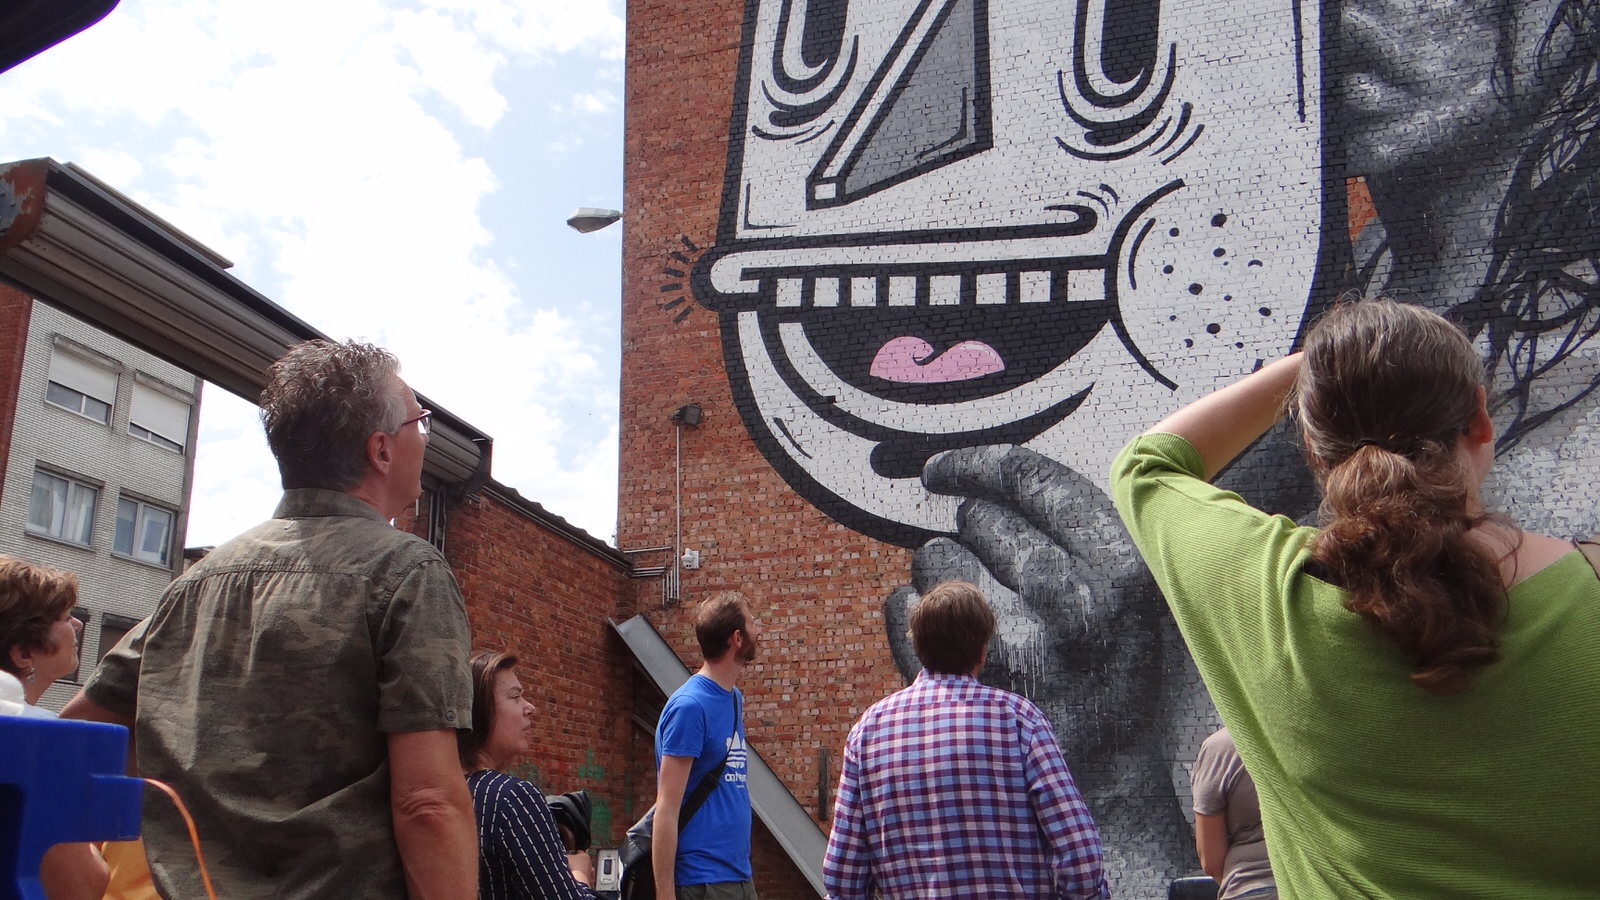 Street art tour: Merksem (NL)